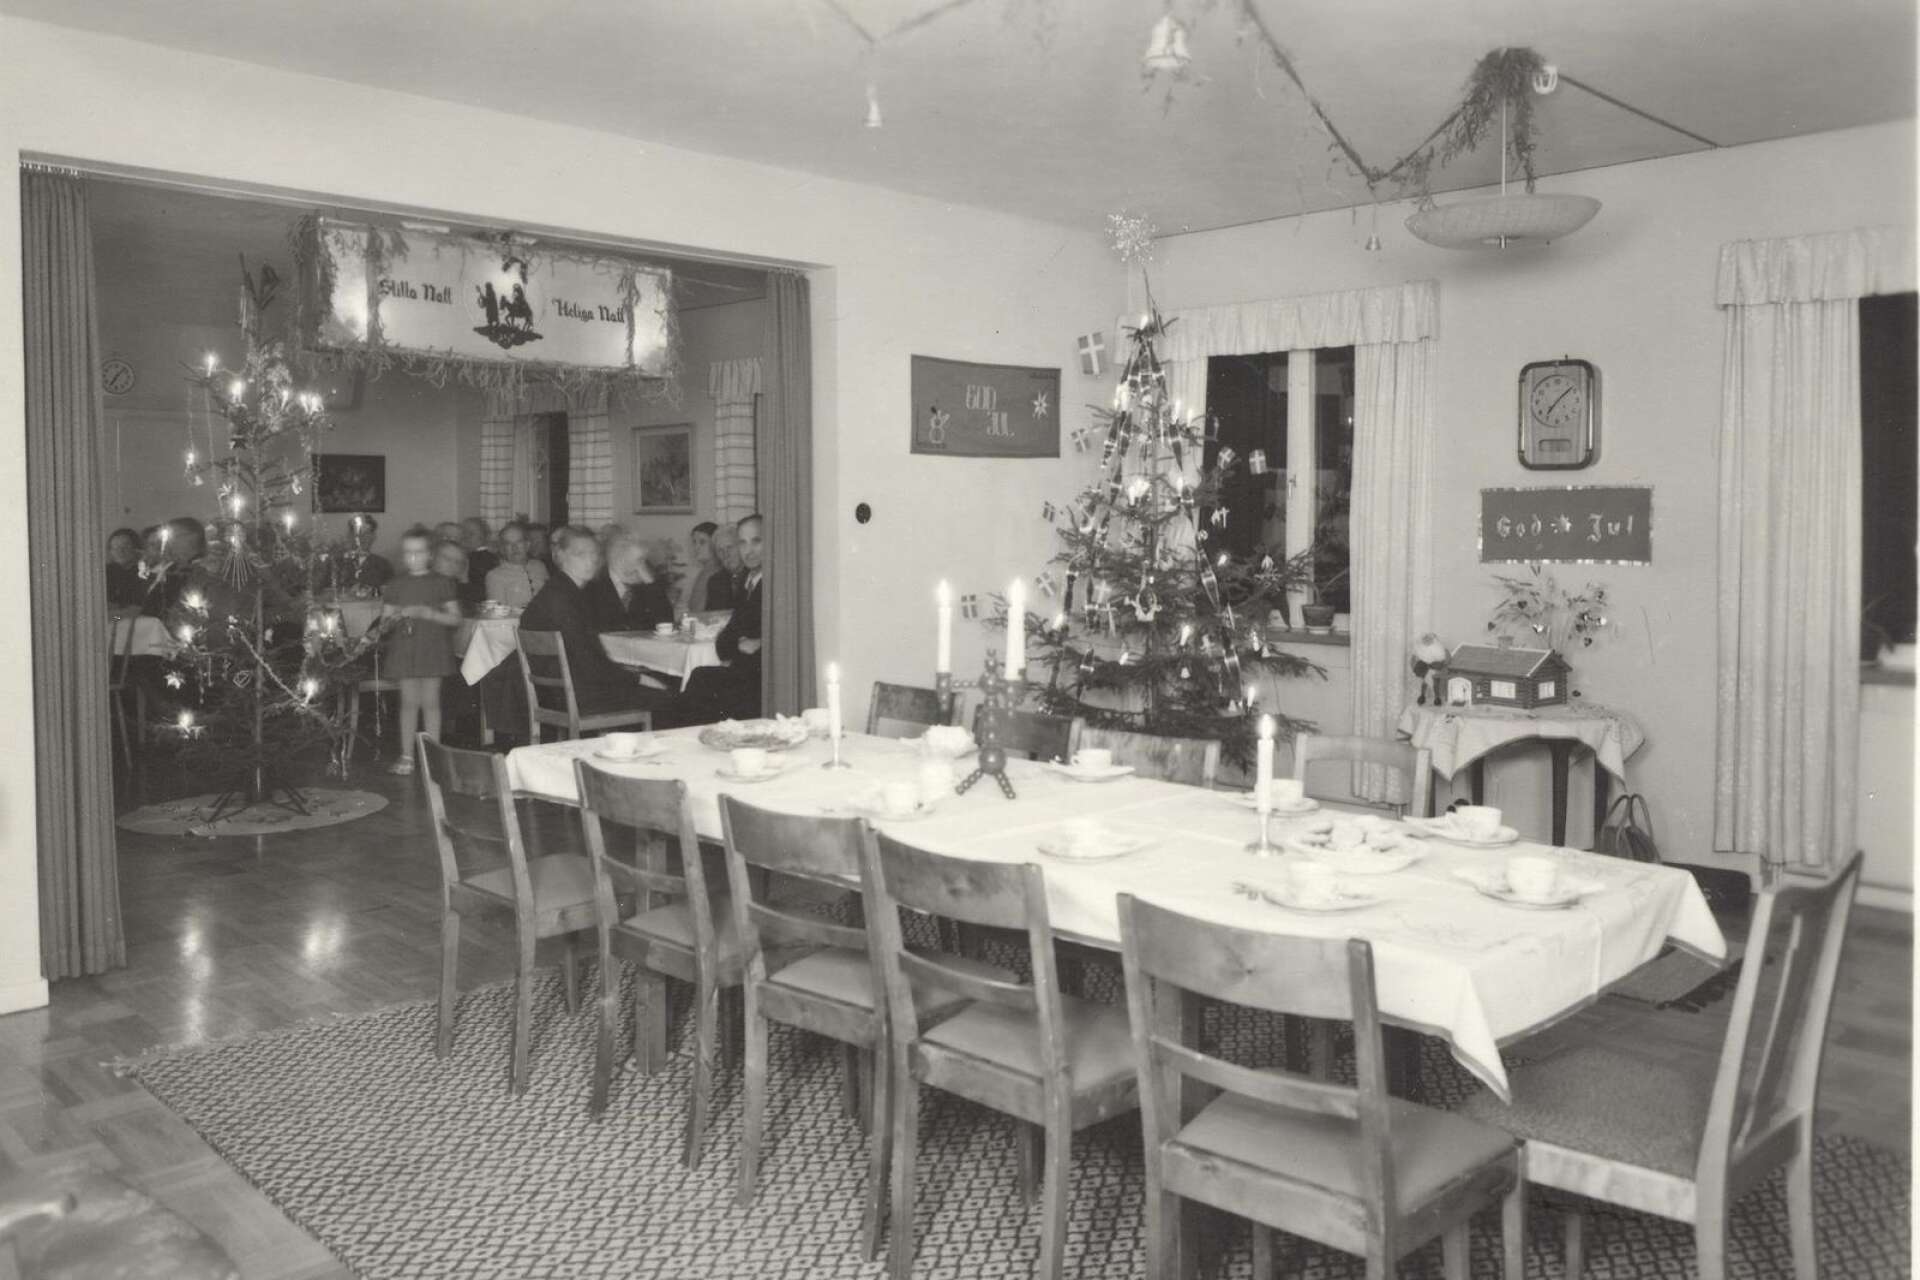 Förra veckan visade vi ett rum från Jonsbolshemmet under 1950-talet. Vi tar en bild till från Jonsbolshemmet, den här gången från ett dagrum under juletid.